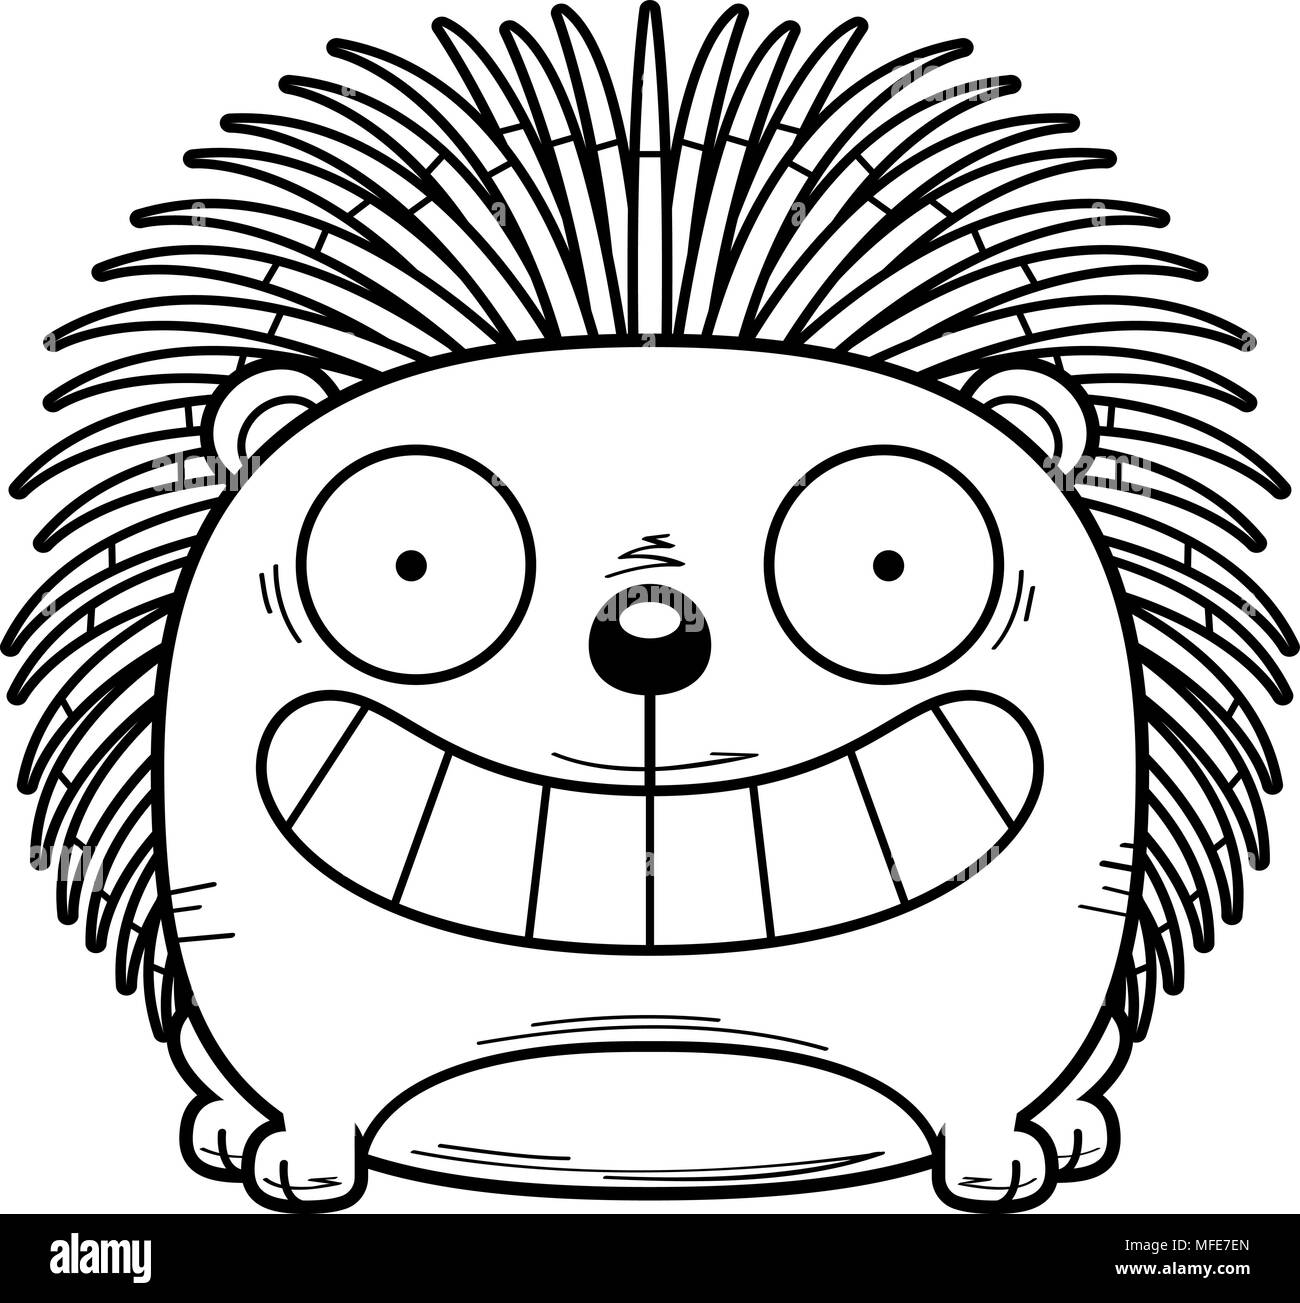 Ein Cartoon Illustration ein Stachelschwein glücklich und lächelnd. Stock Vektor